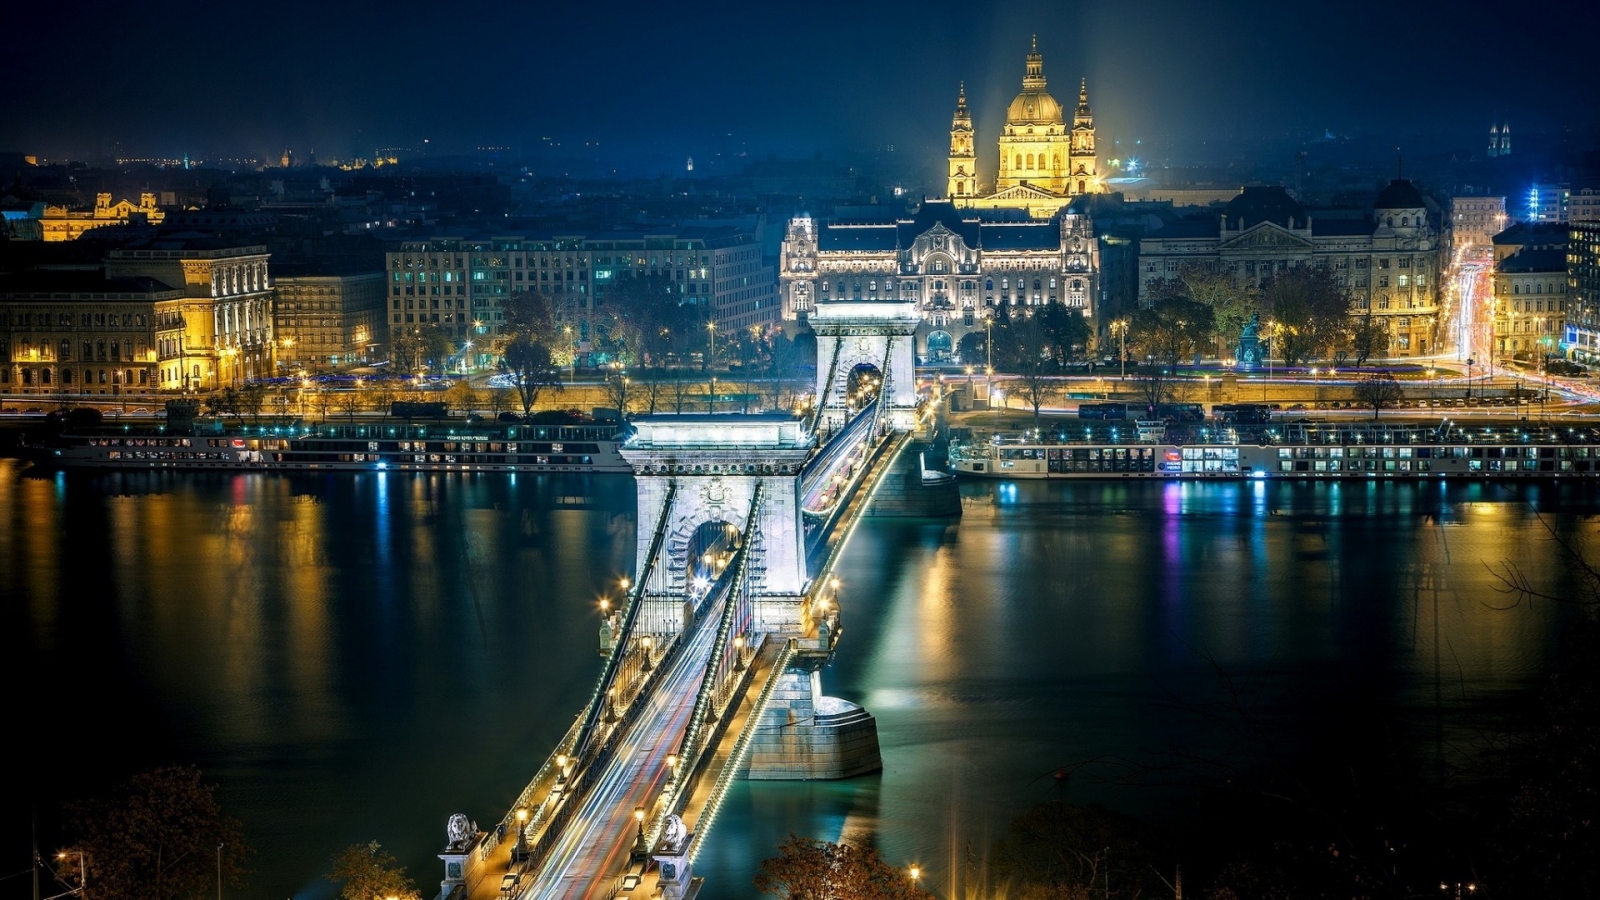 Szechenyi Chain Bridge Budapest for 1600 x 900 HDTV resolution